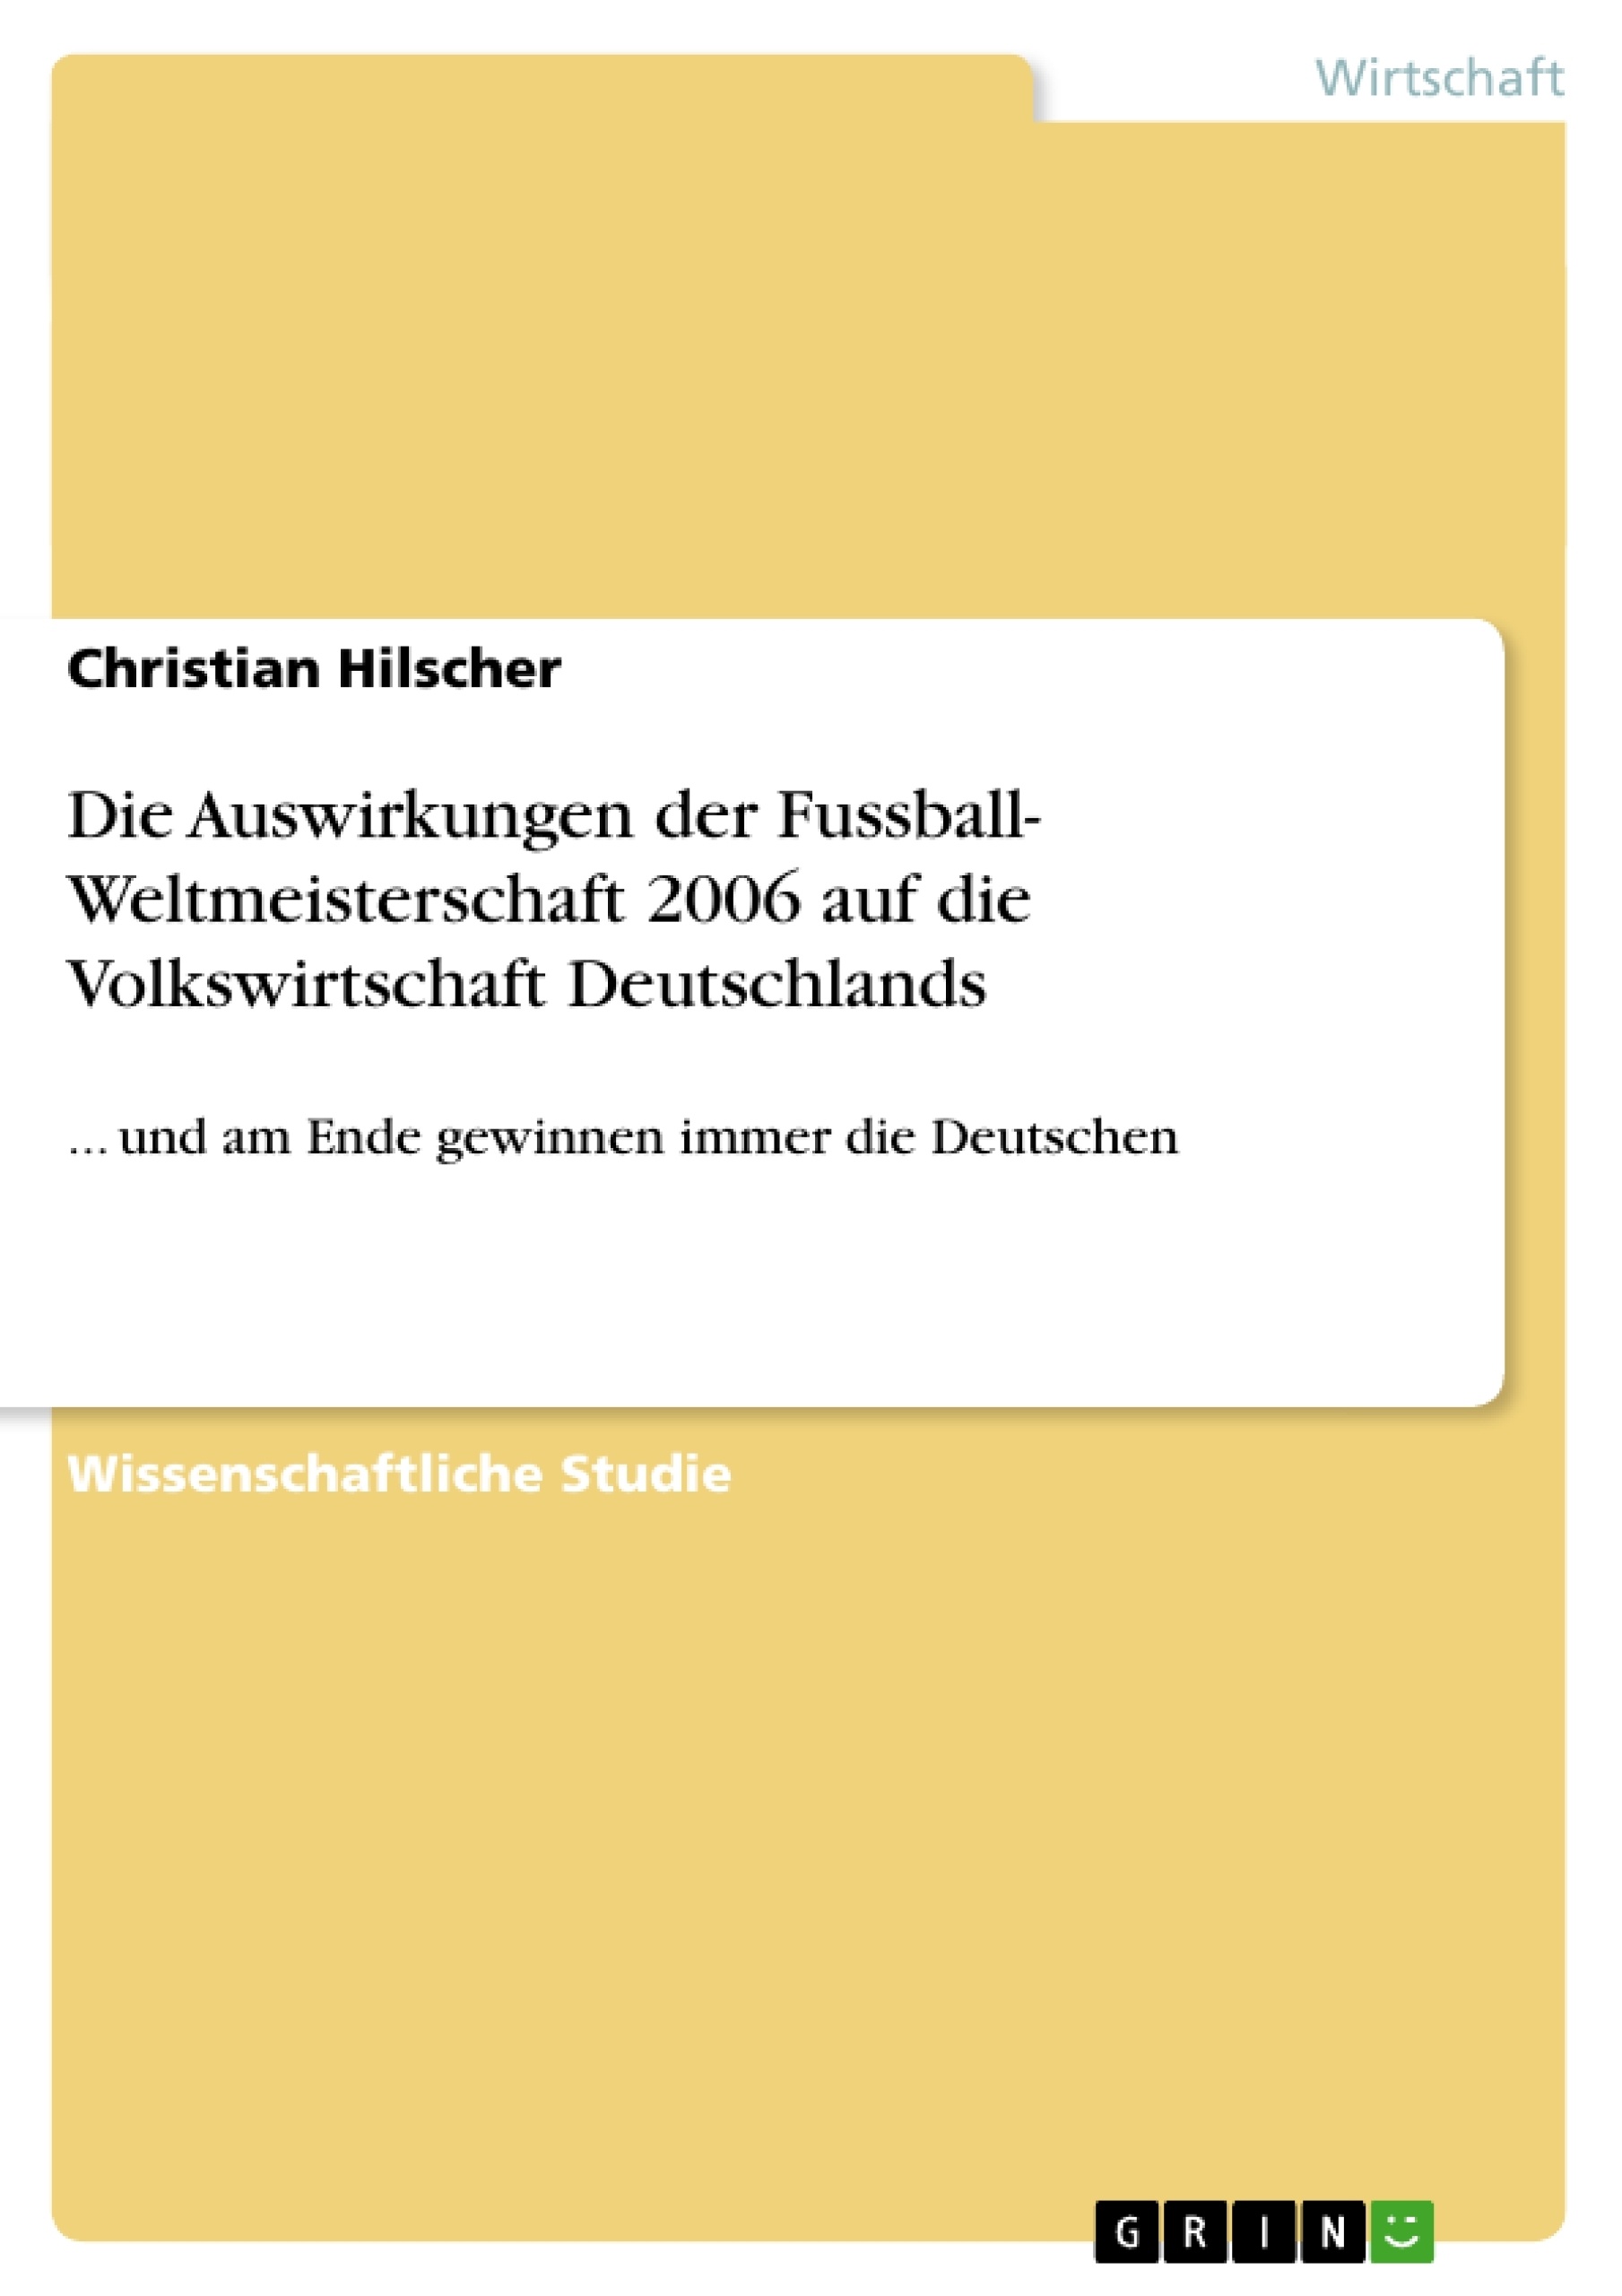 Titel: Die Auswirkungen der Fussball- Weltmeisterschaft 2006 auf die Volkswirtschaft Deutschlands